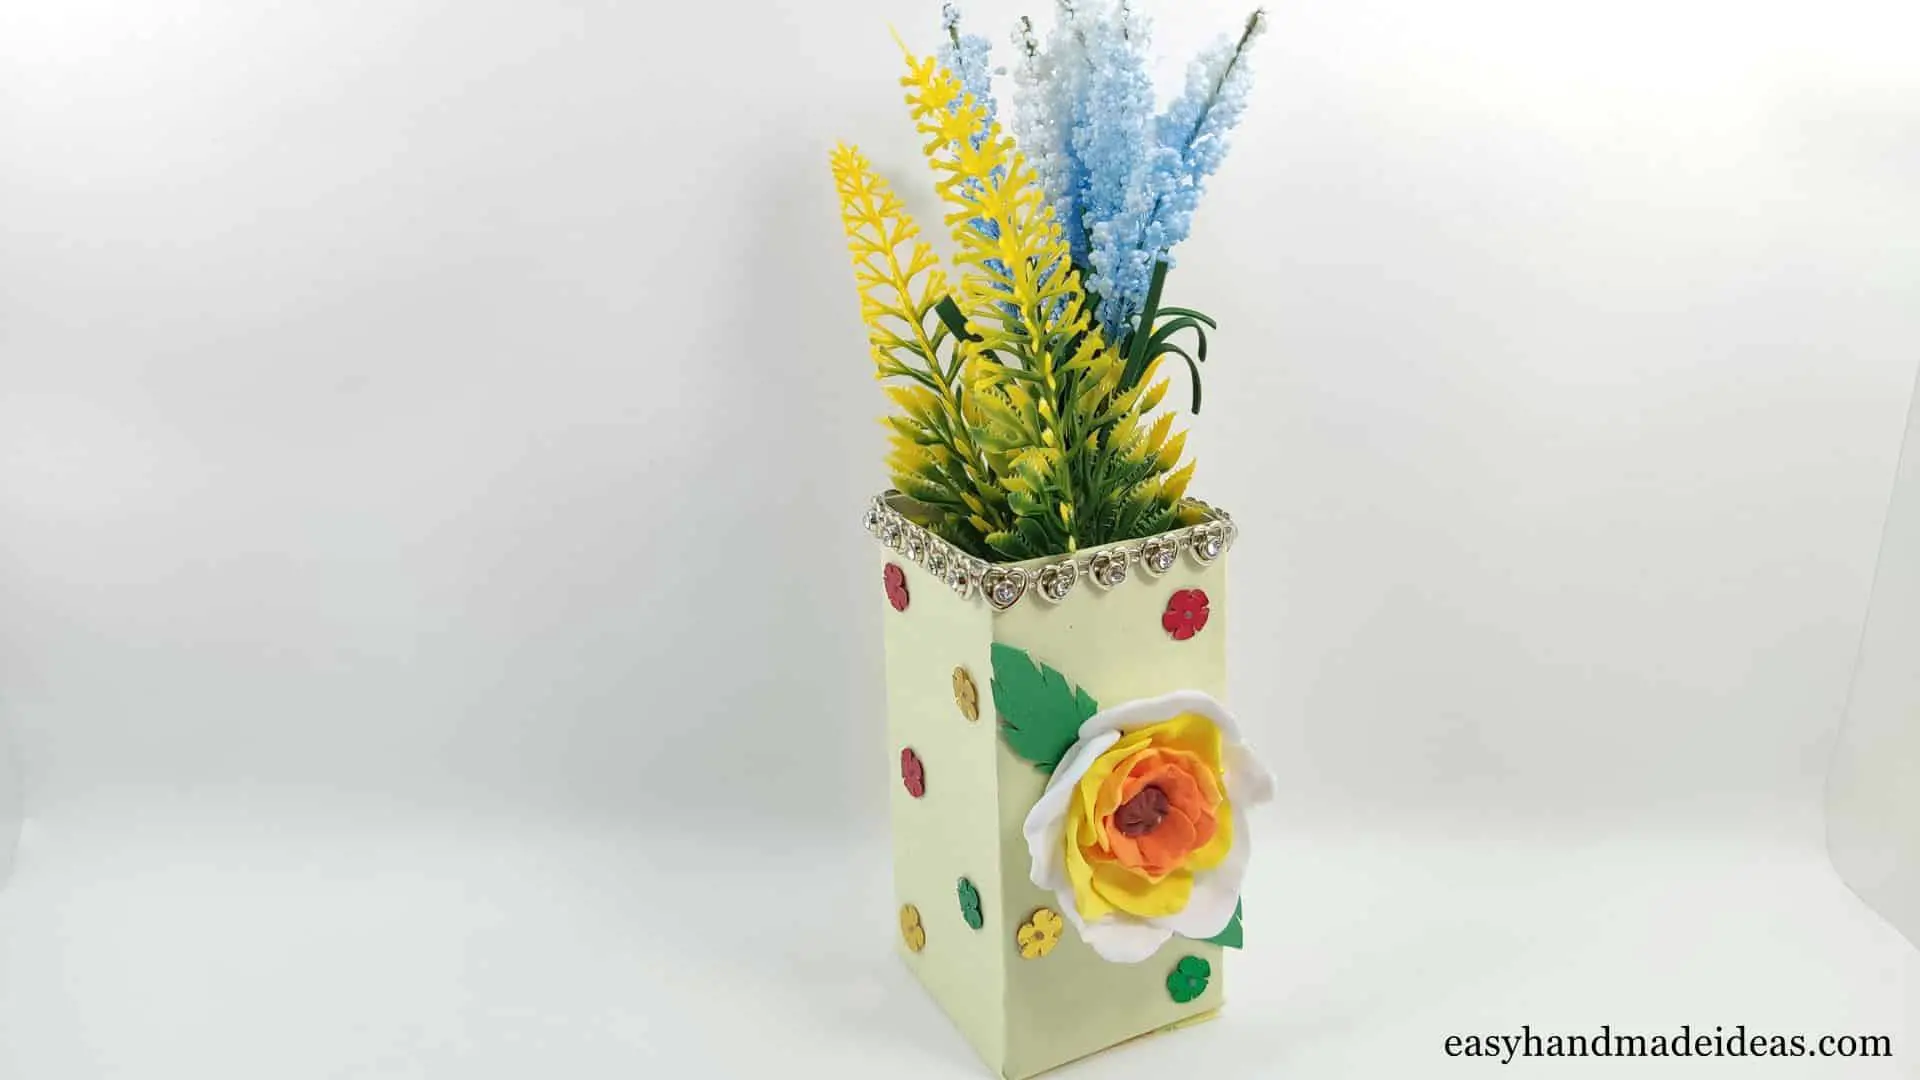 A cardboard flower vase